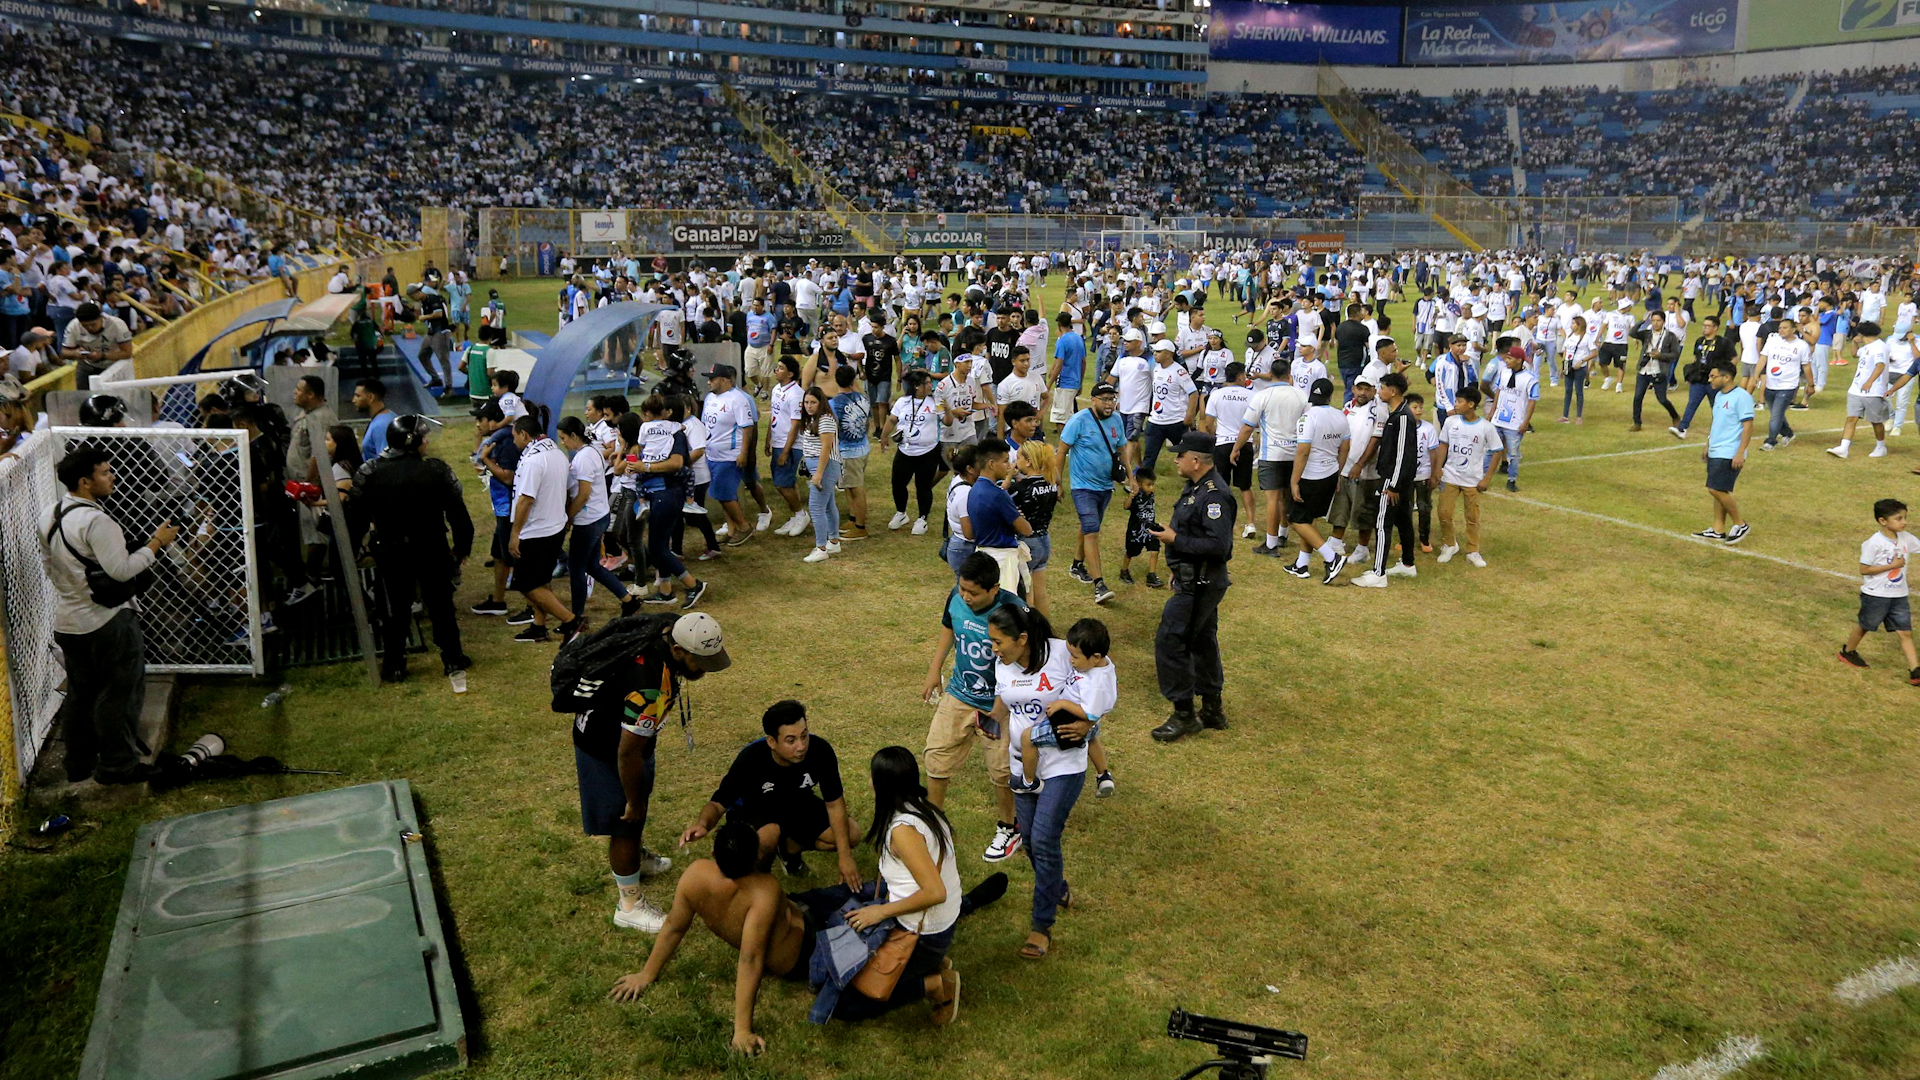 Primera División de Fútbol de El Salvador - Wikipedia